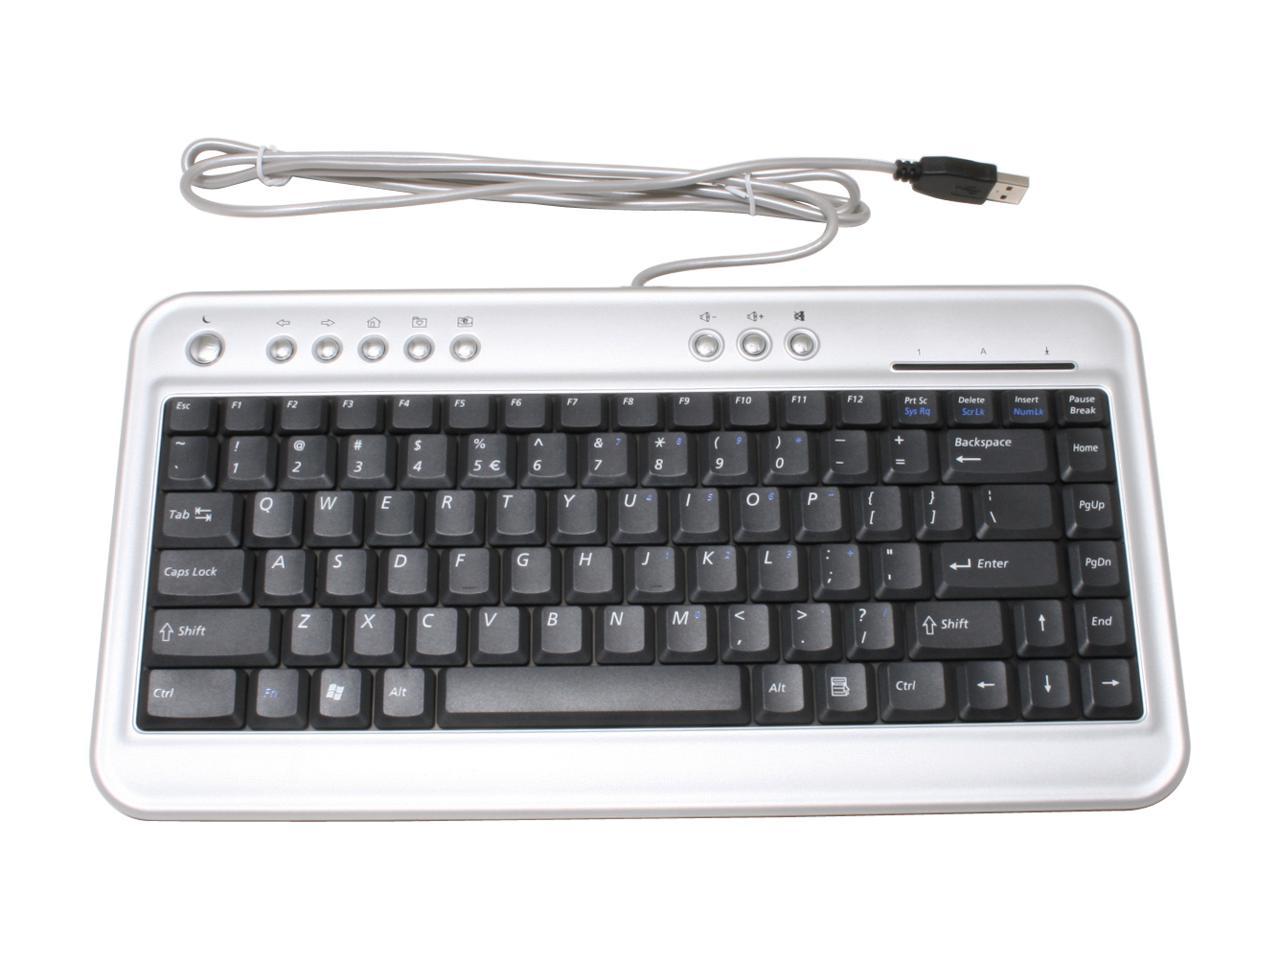 btc 6100 mini keyboard